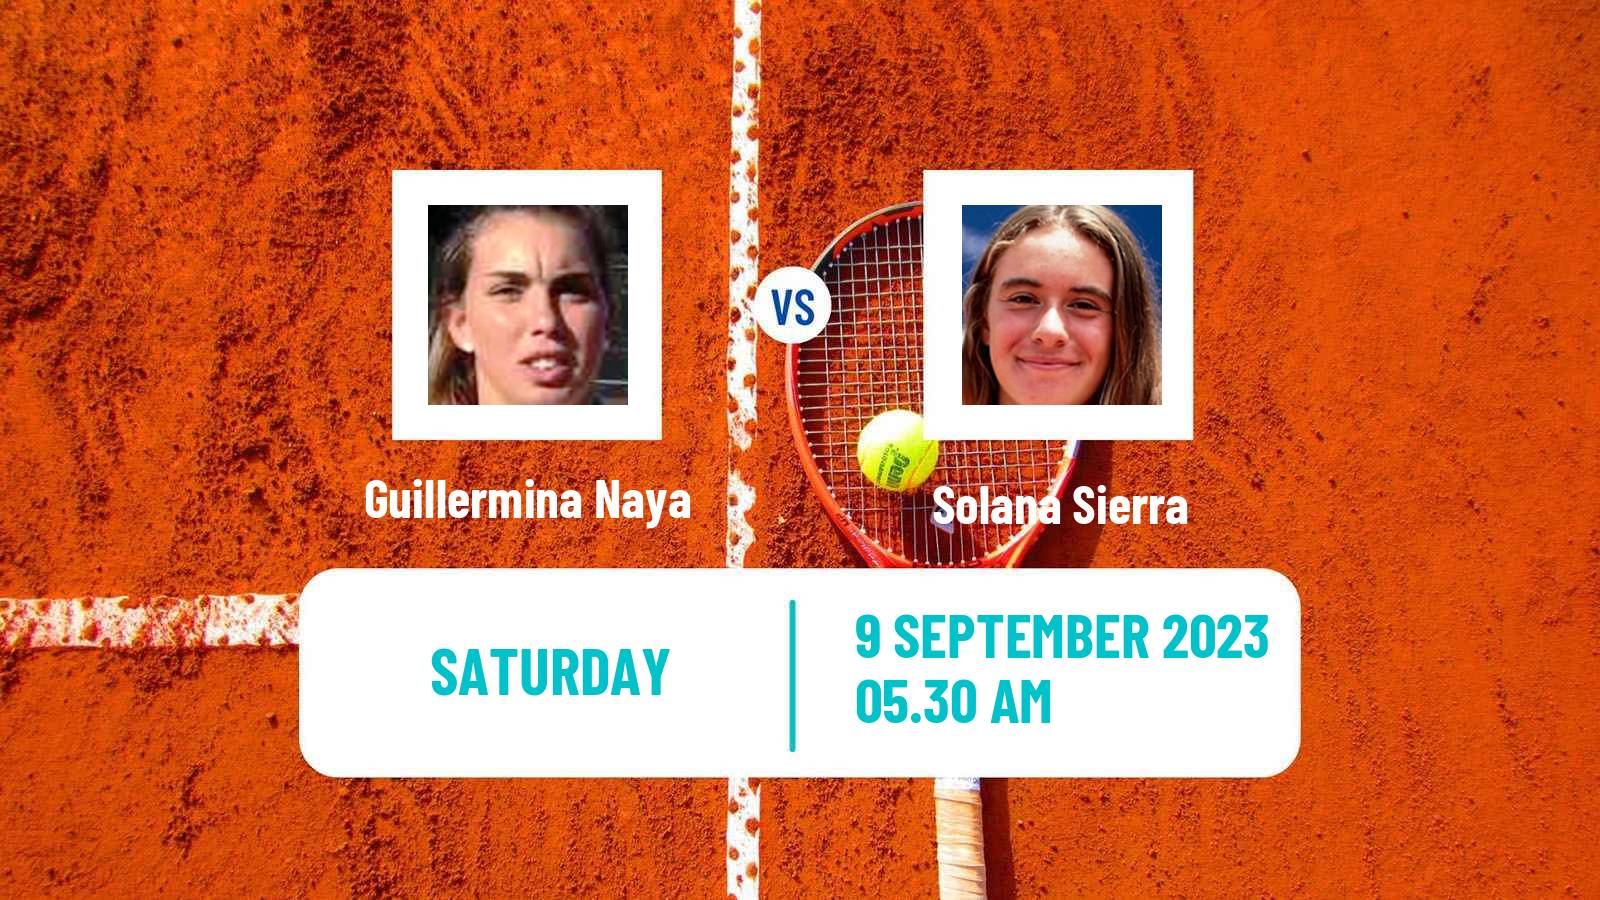 Tennis ITF W25 Zaragoza Women Guillermina Naya - Solana Sierra